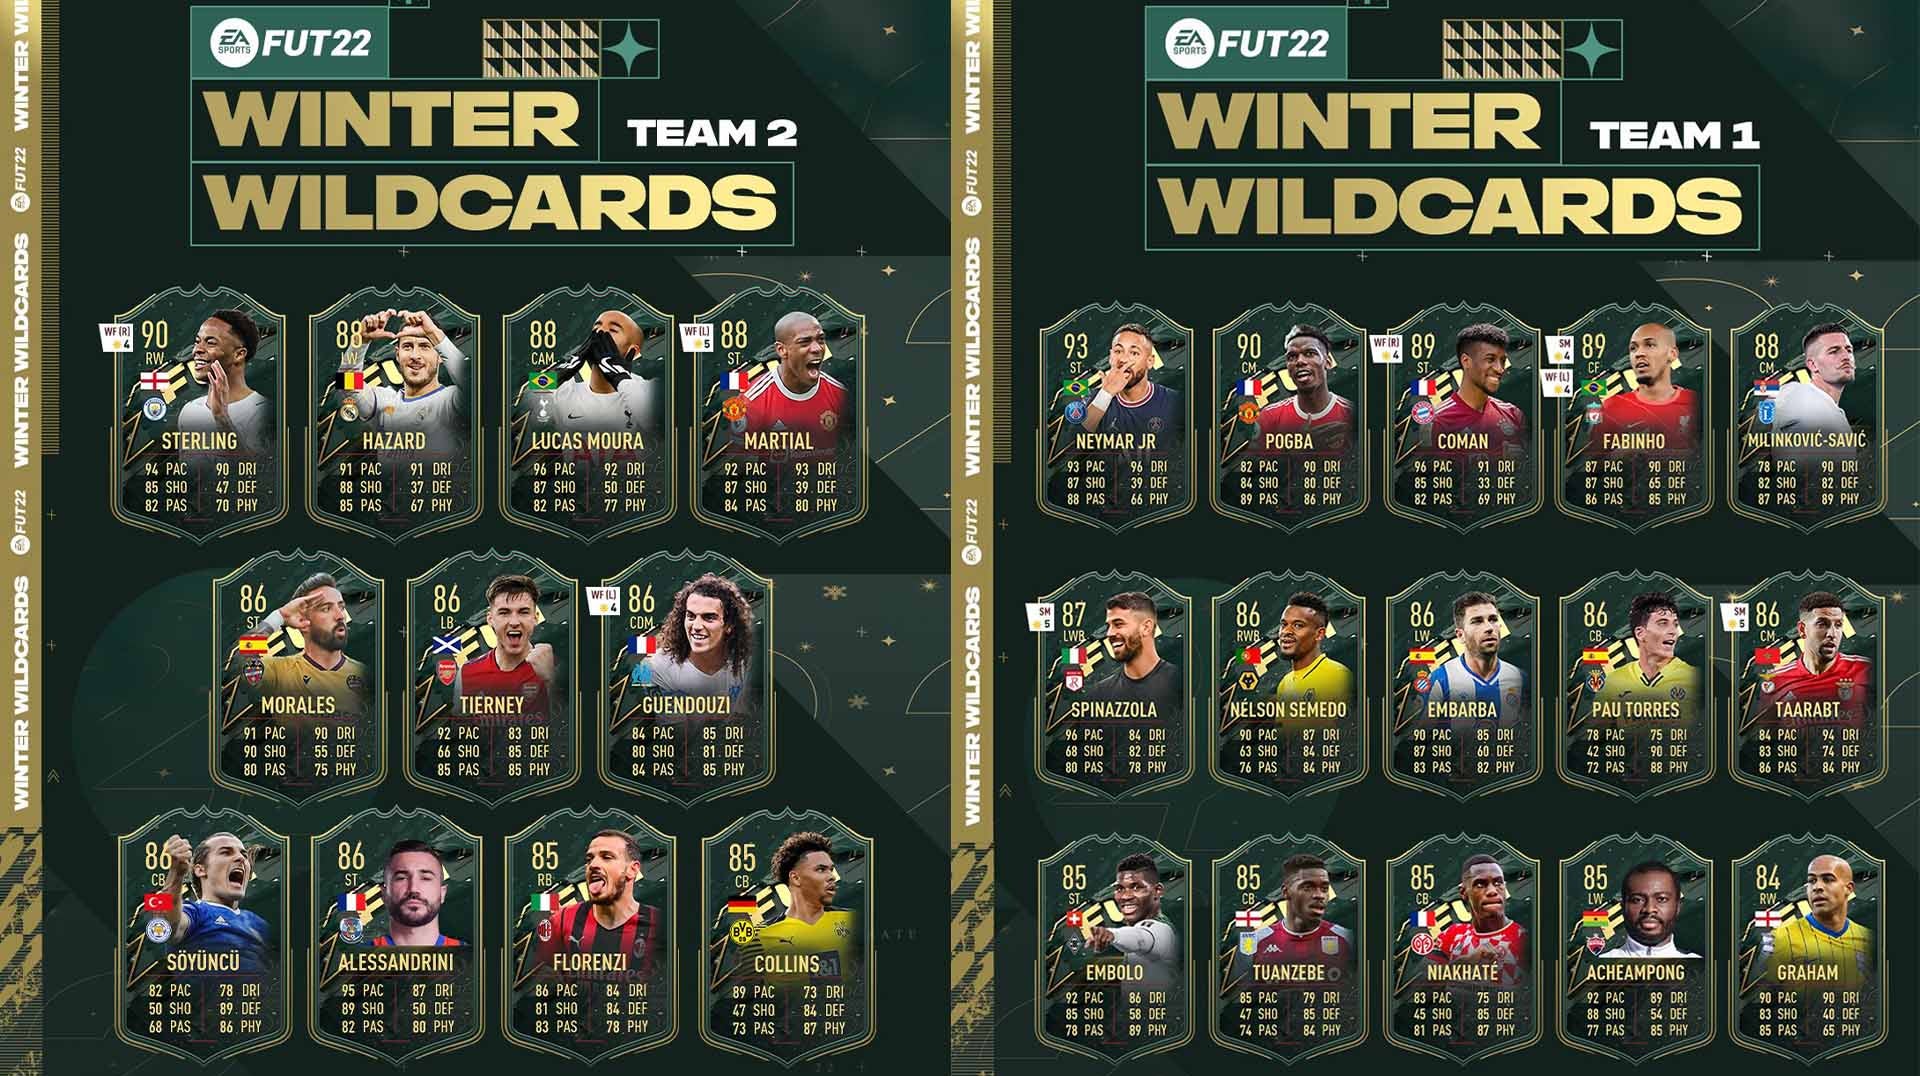 Bilder zu FIFA 22 Winter Wildcard - Alle Spieler, Upgrades, Tokens und mehr